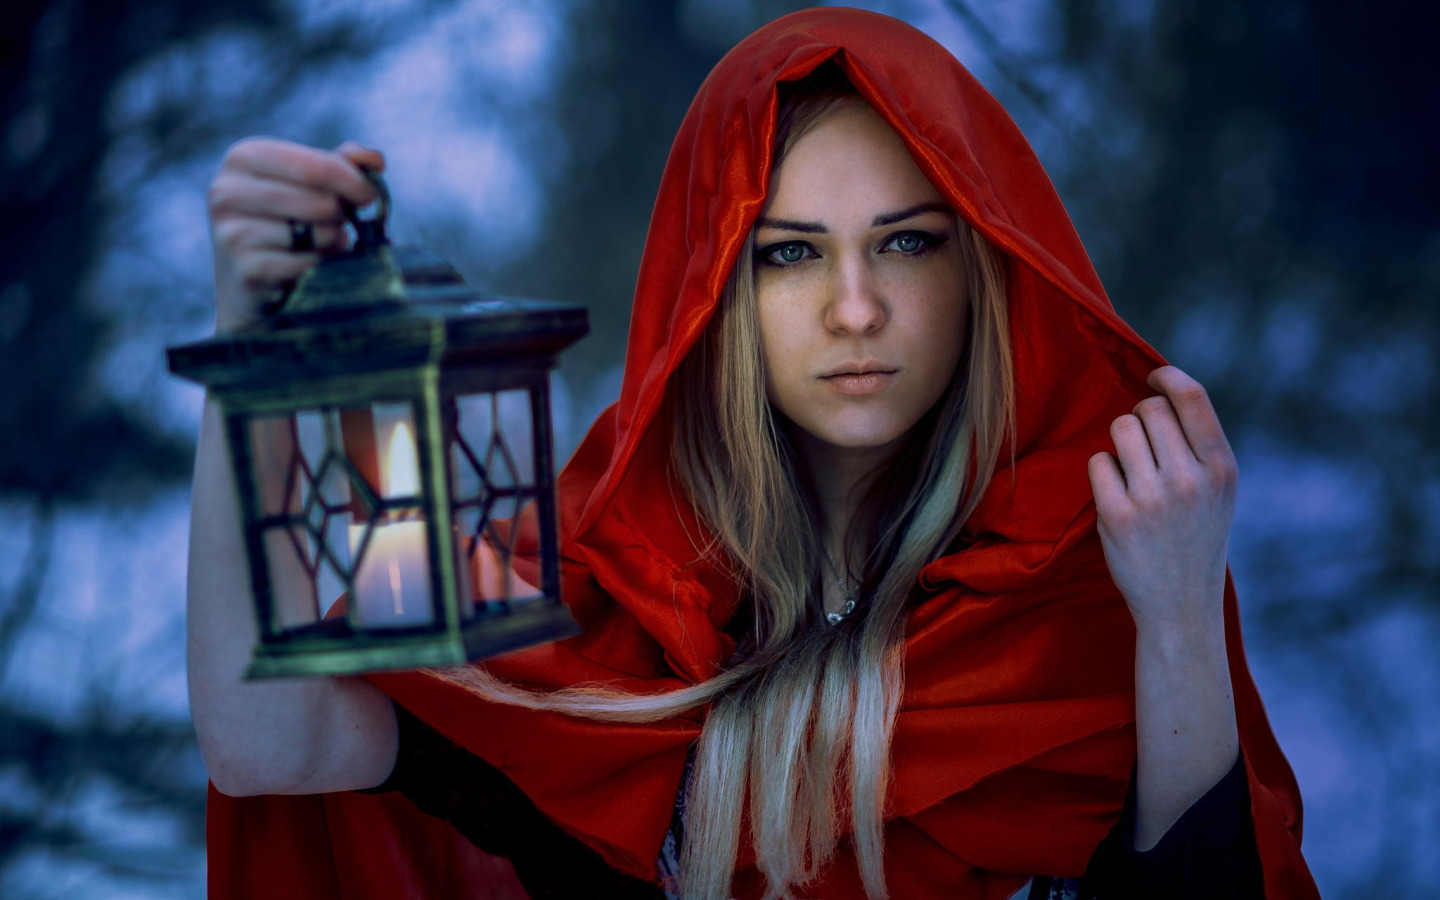 portrait, hood, lantern, in red